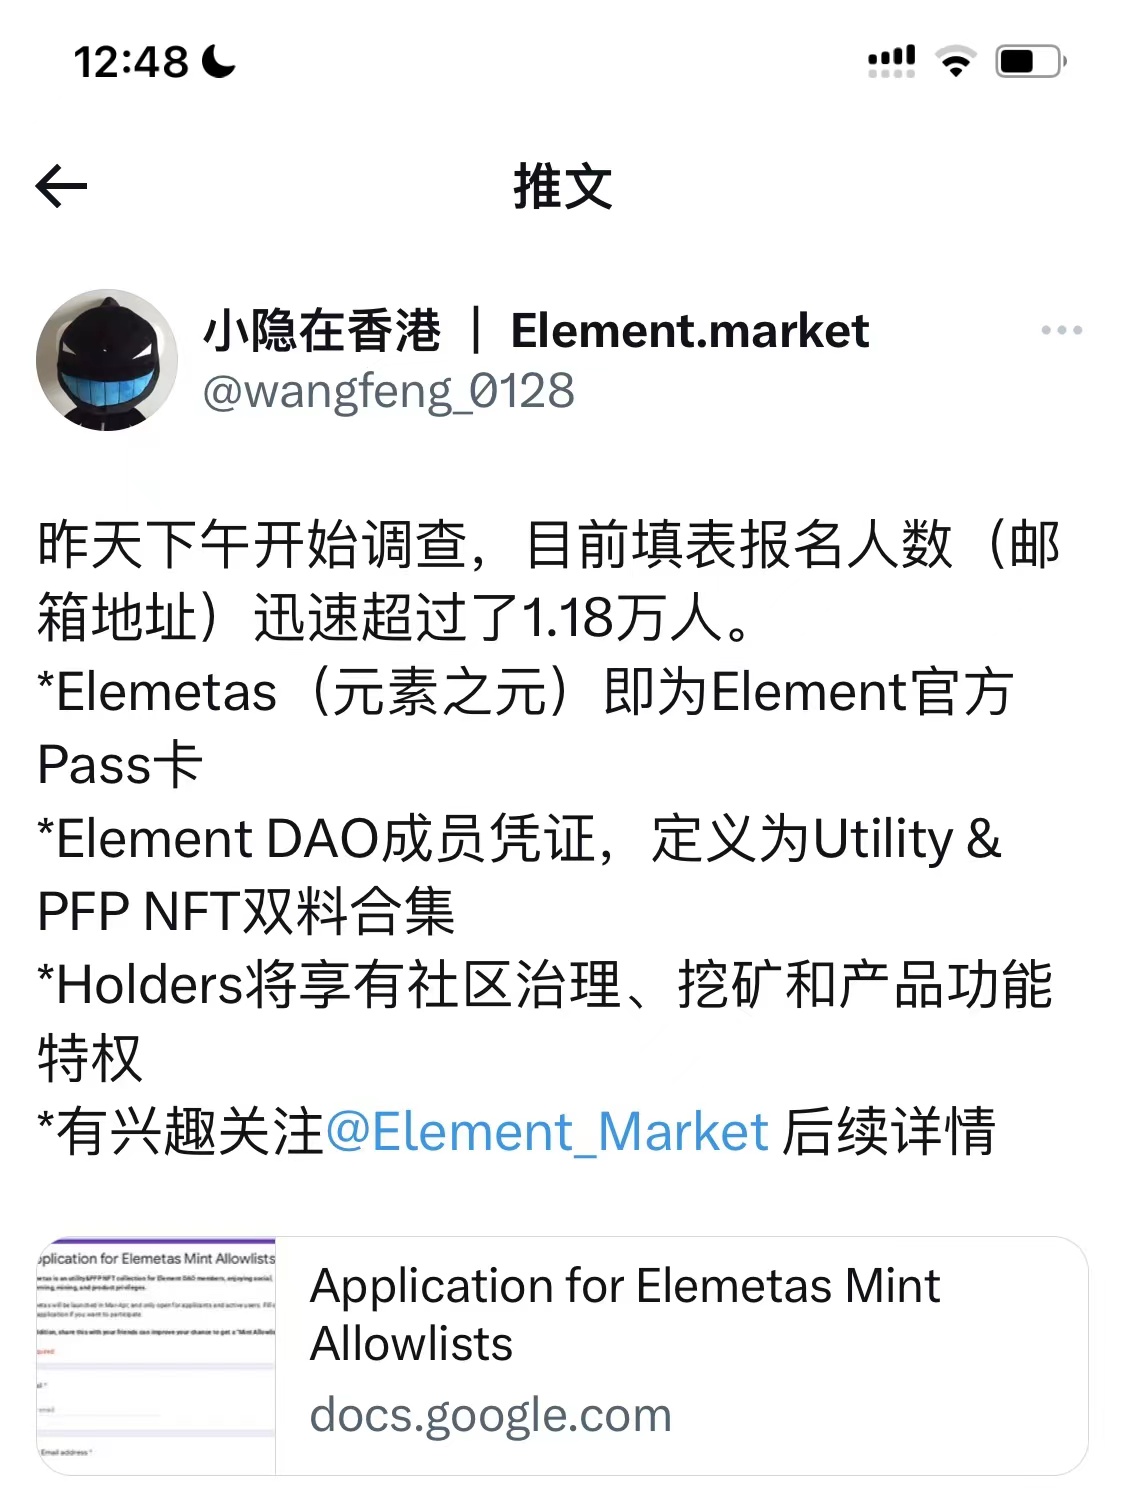 王峰：Element计划发行官方Pass卡Elemetas（元素之元）